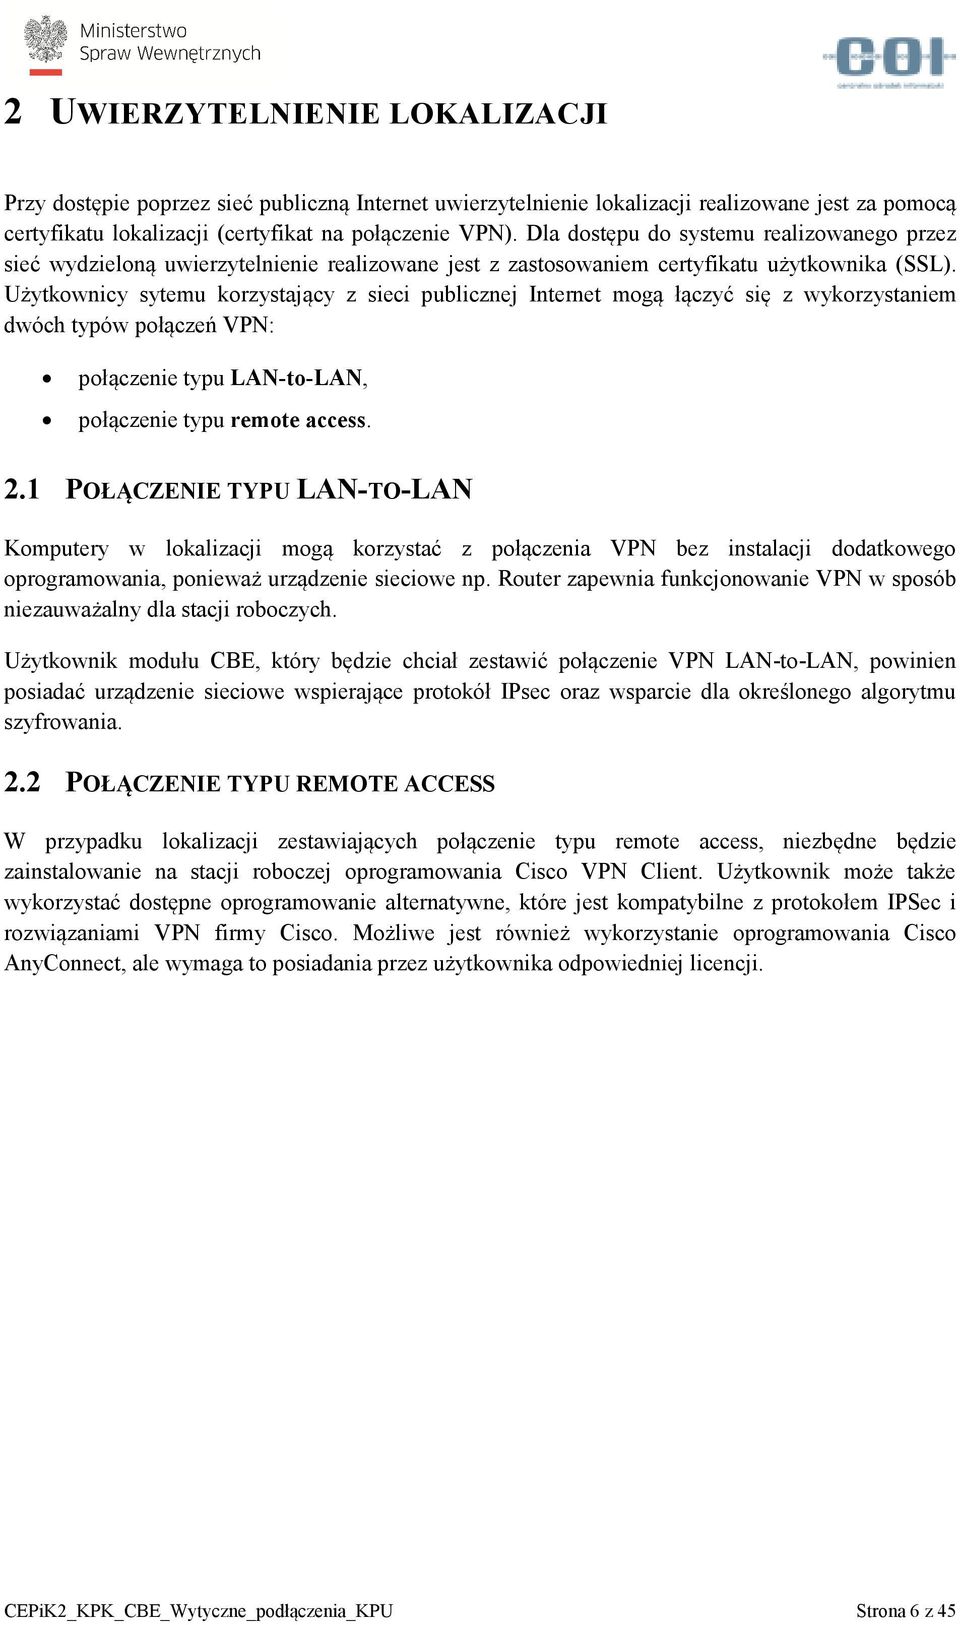 Użytkownicy sytemu korzystający z sieci publicznej Internet mogą łączyć się z wykorzystaniem dwóch typów połączeń VPN: połączenie typu LAN-to-LAN, połączenie typu remote access. 2.